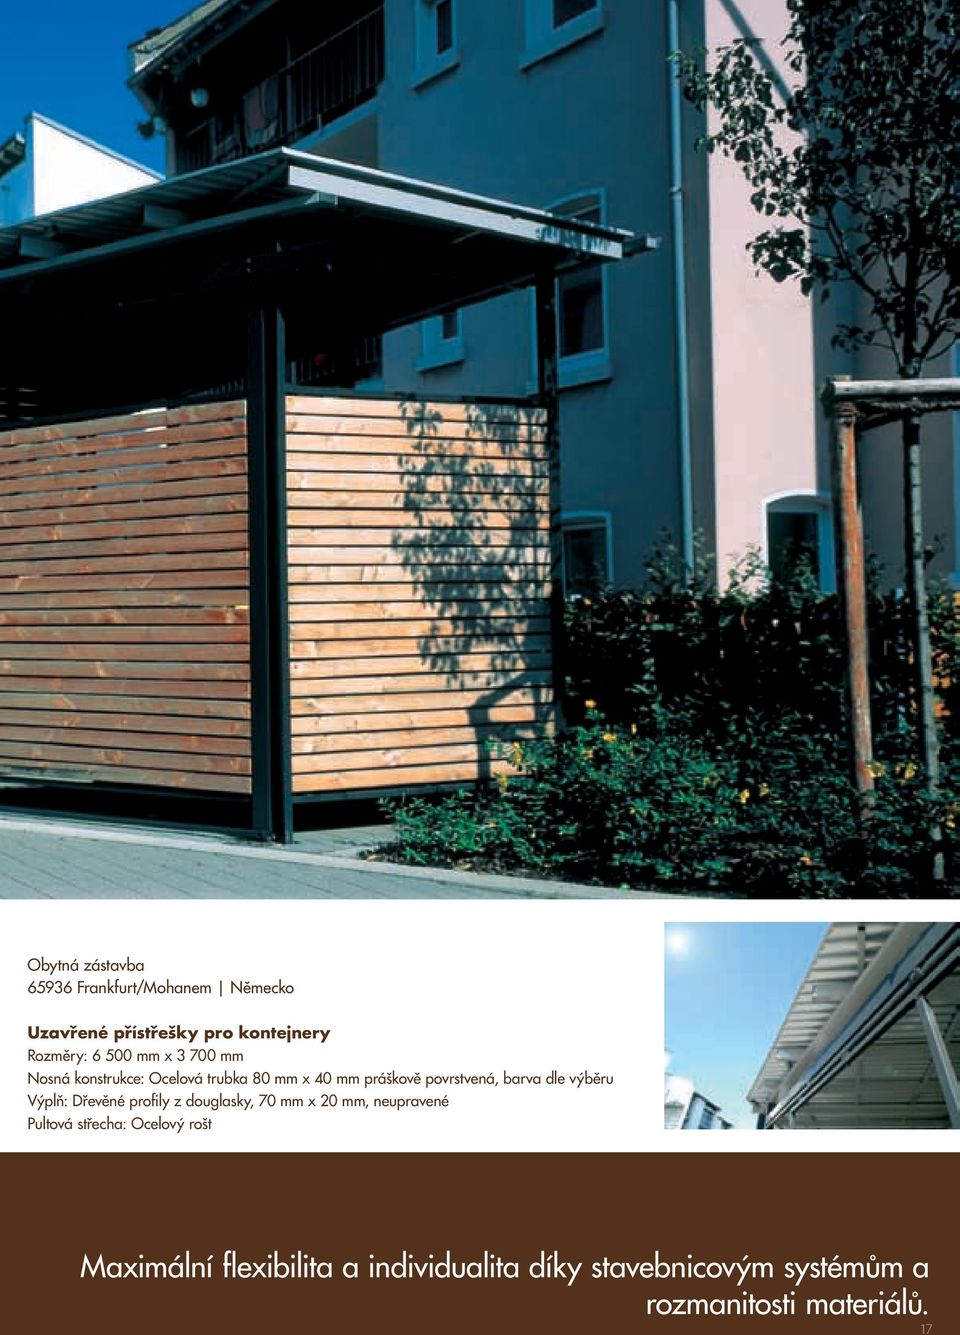 výběru Výplň: Dřevěné profily z douglasky, 70 mm x 20 mm, neupravené Pultová střecha: Ocelový